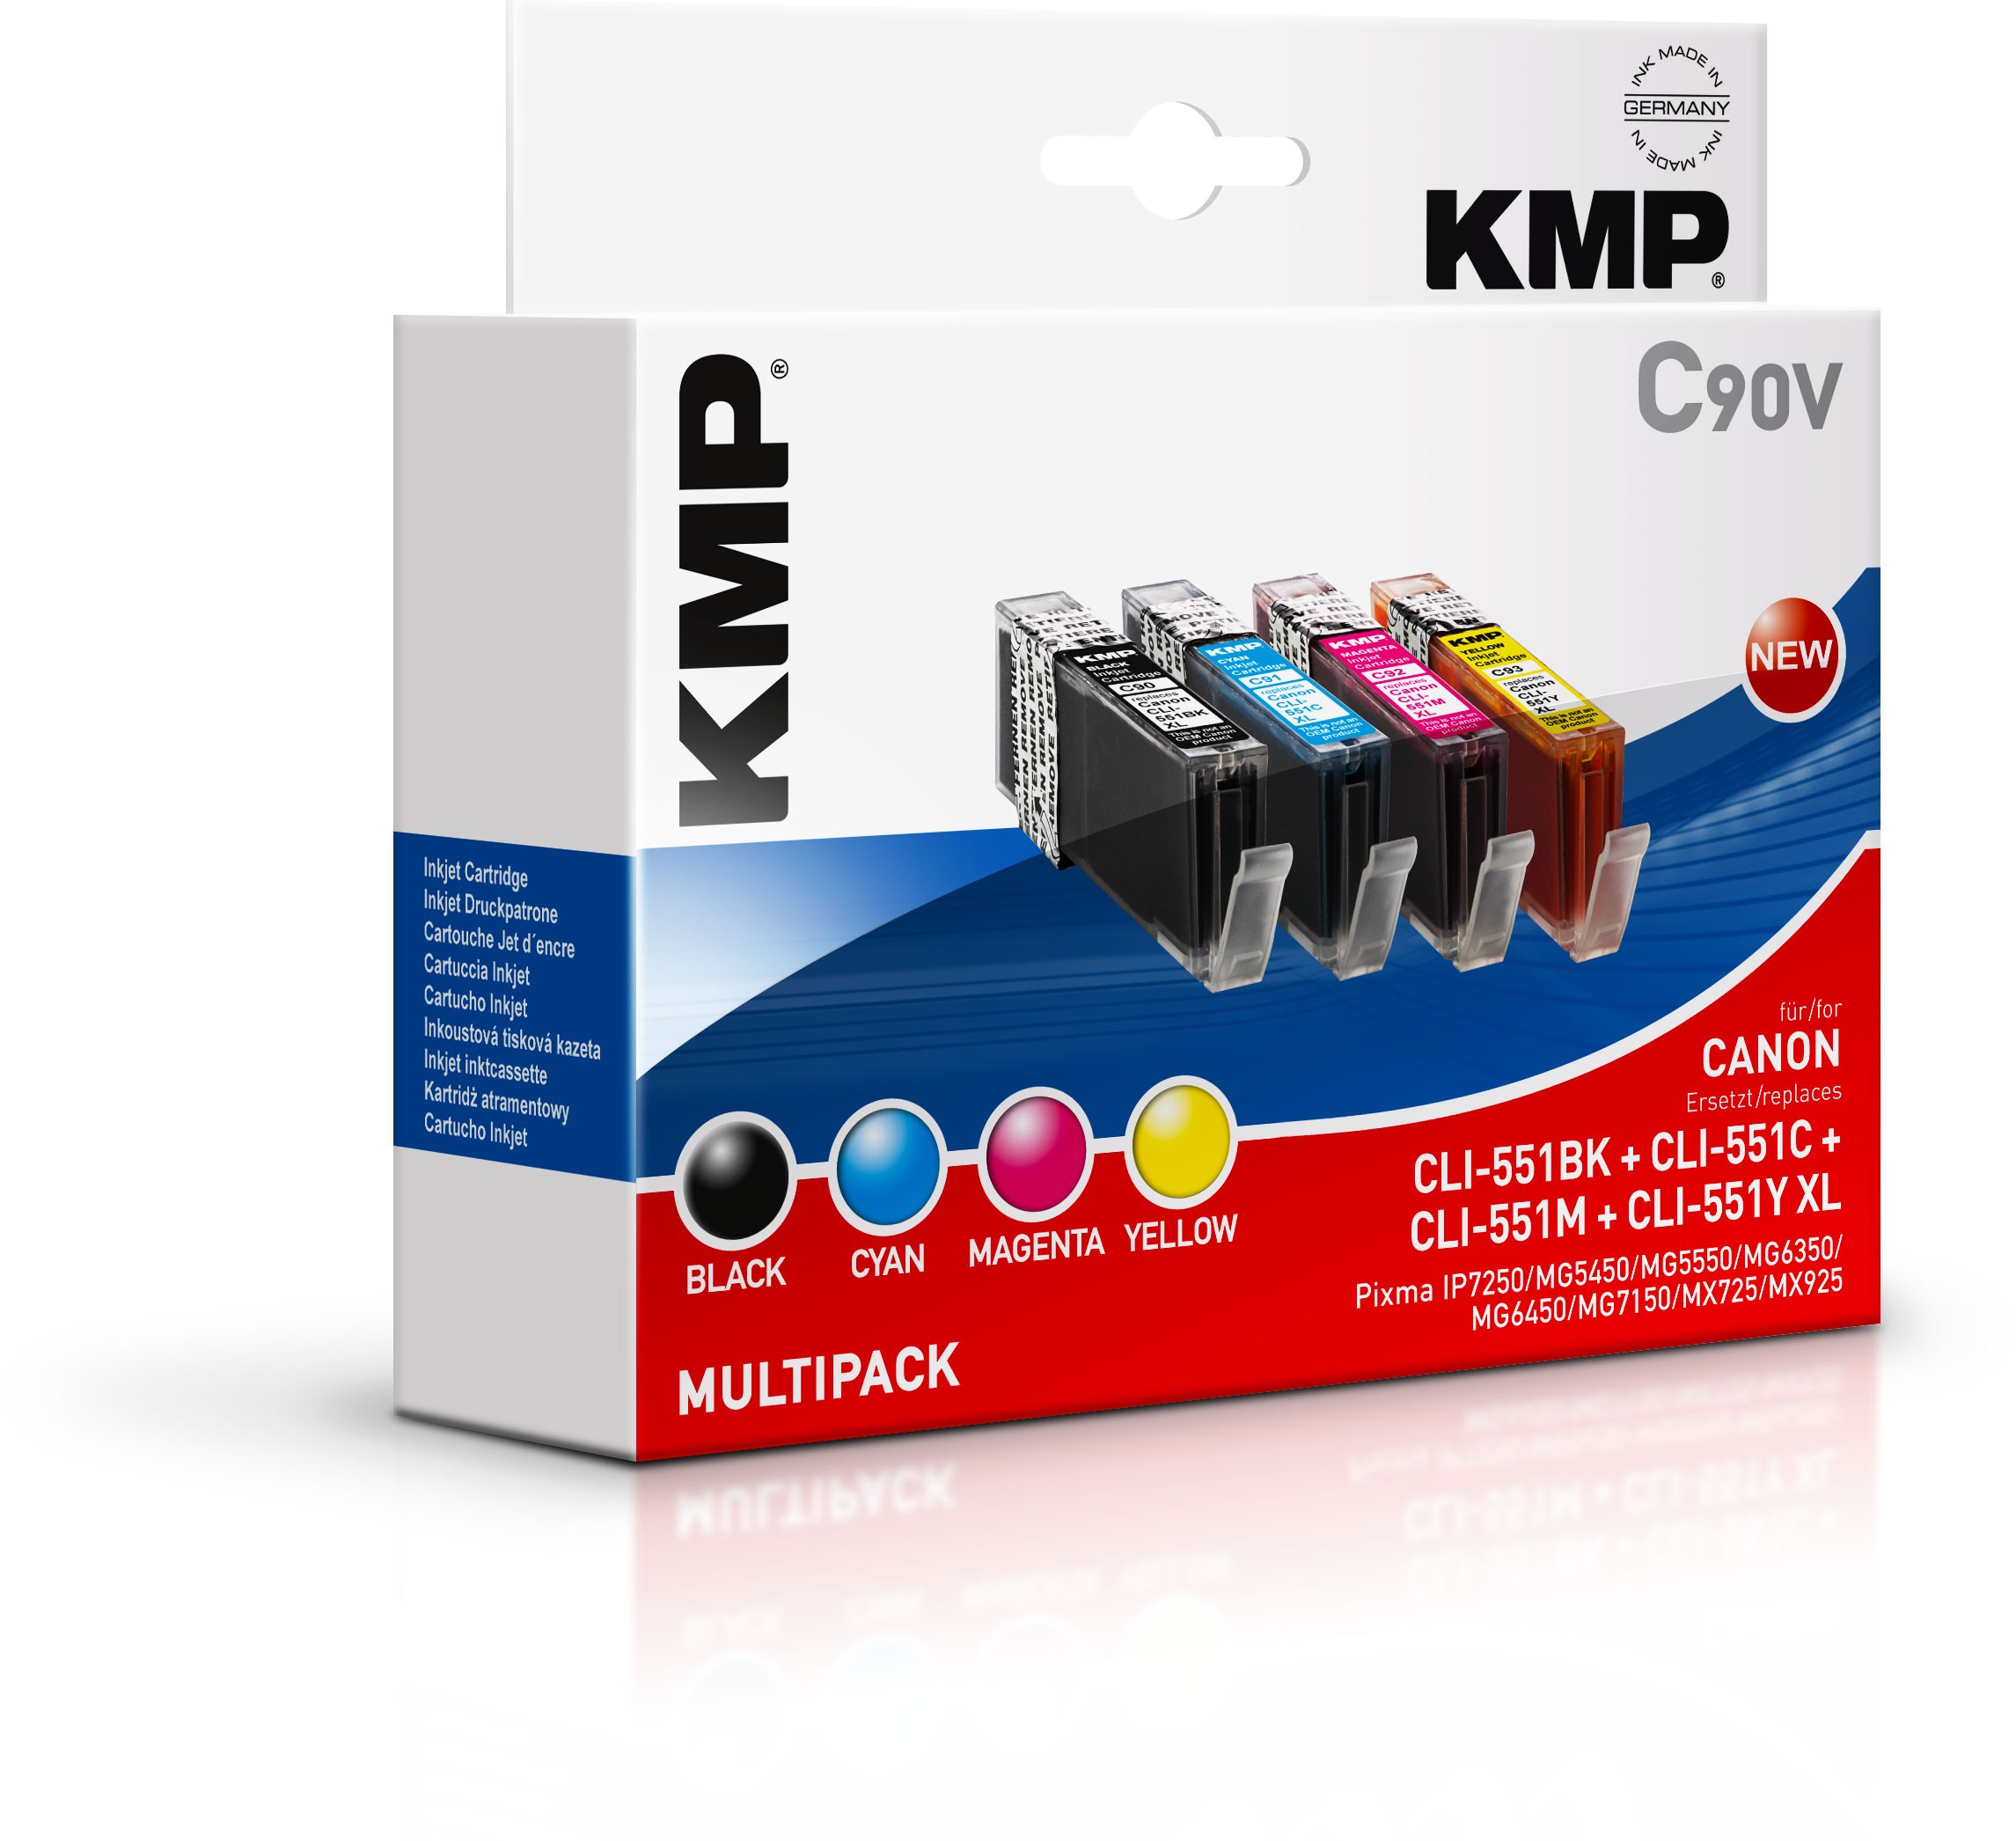 KMP C90V multi pack / cyaan, geel, magenta, zwart